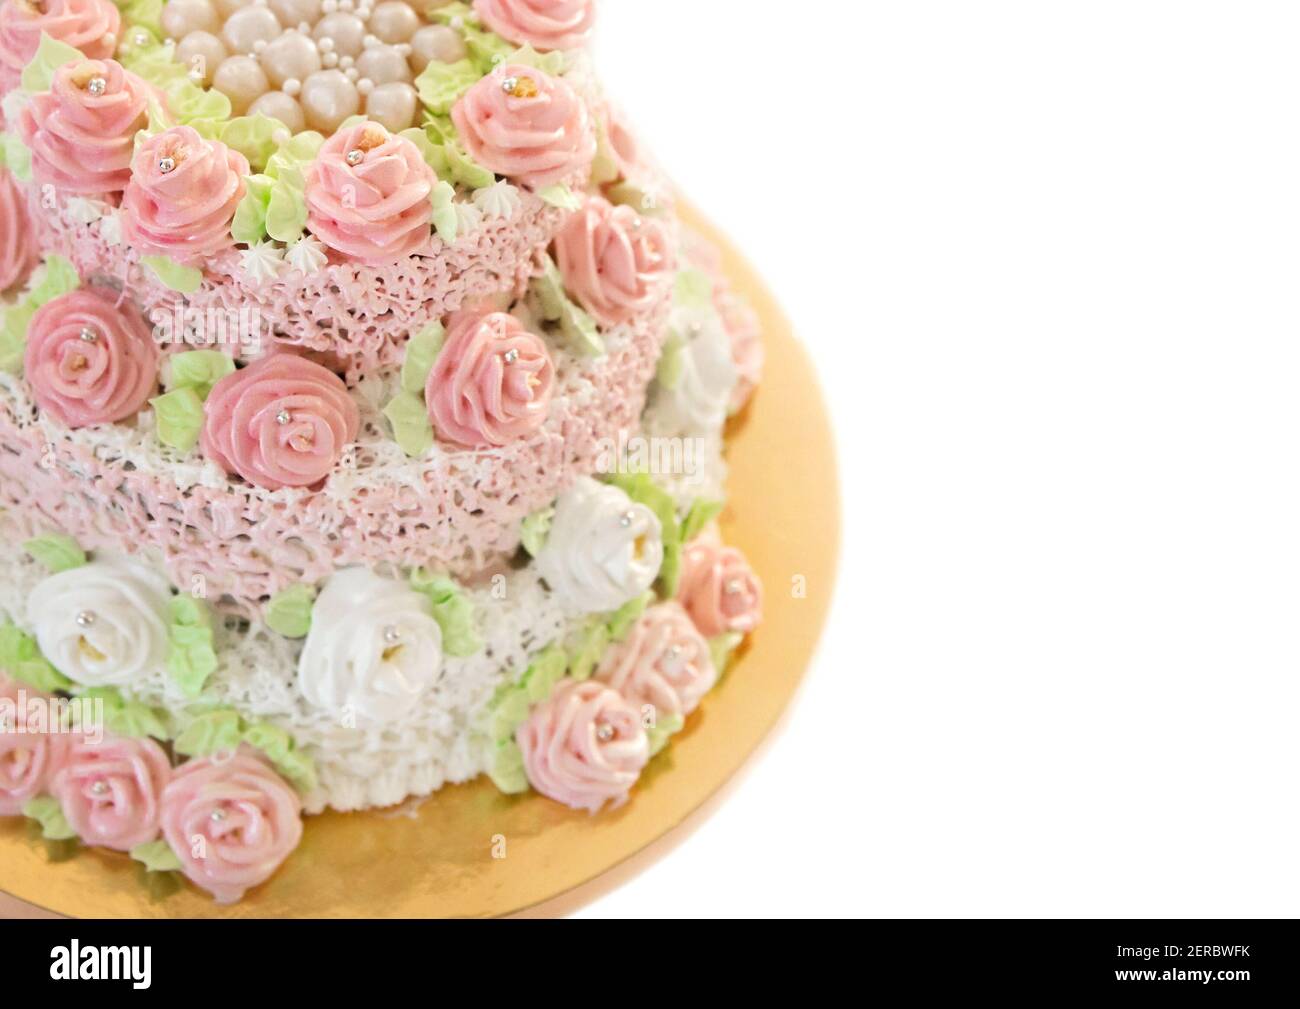  SE Si&Moos Perlas comestibles rosas para decoración de  pasteles, perlas de azúcar rosadas, chispas de perlas rosas para decoración  de pasteles, gránulos rosados, decoraciones comestibles de 3.5 onzas con  pinzas 